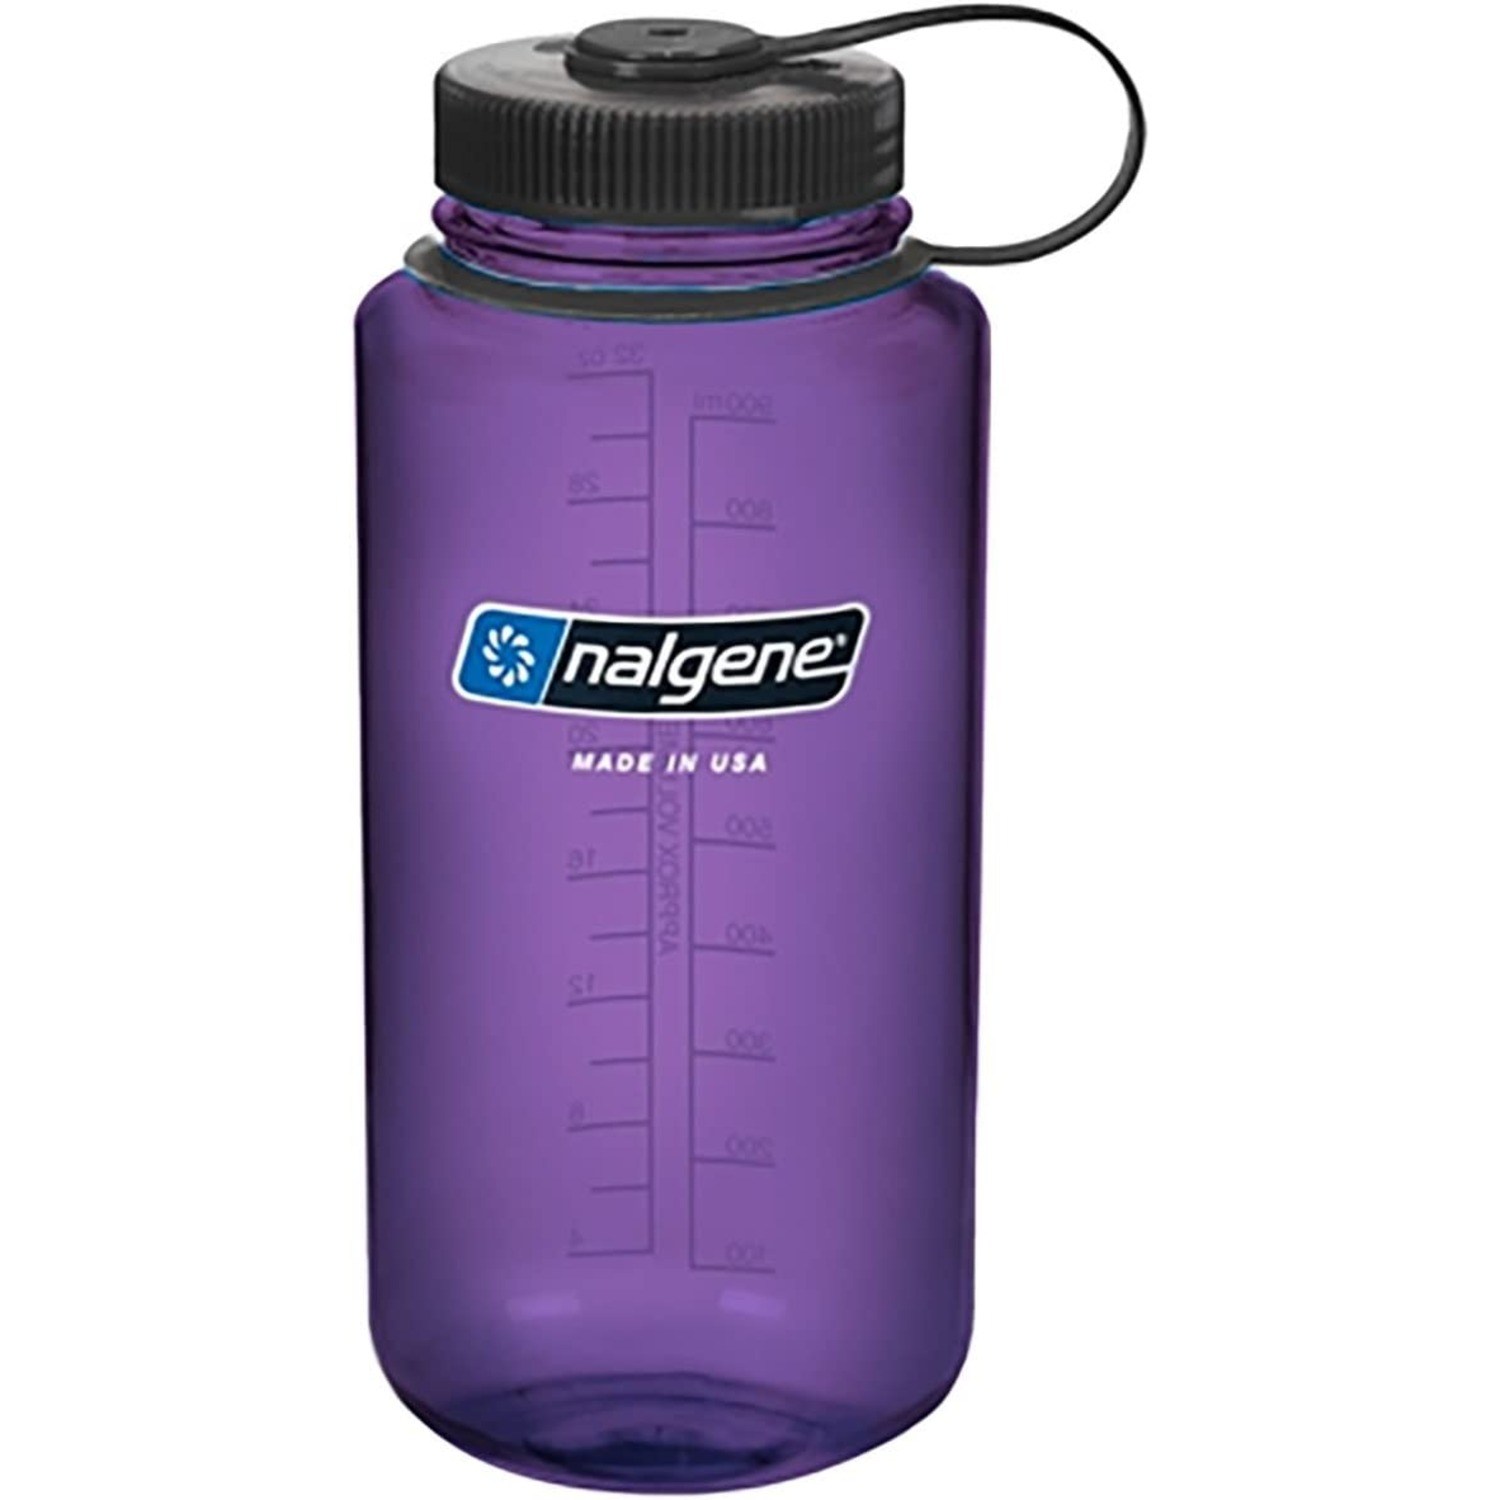 https://cdn.bestreviews.com/images/v4desktop/product-matrix/nalgene-triton-water-bottle.jpg